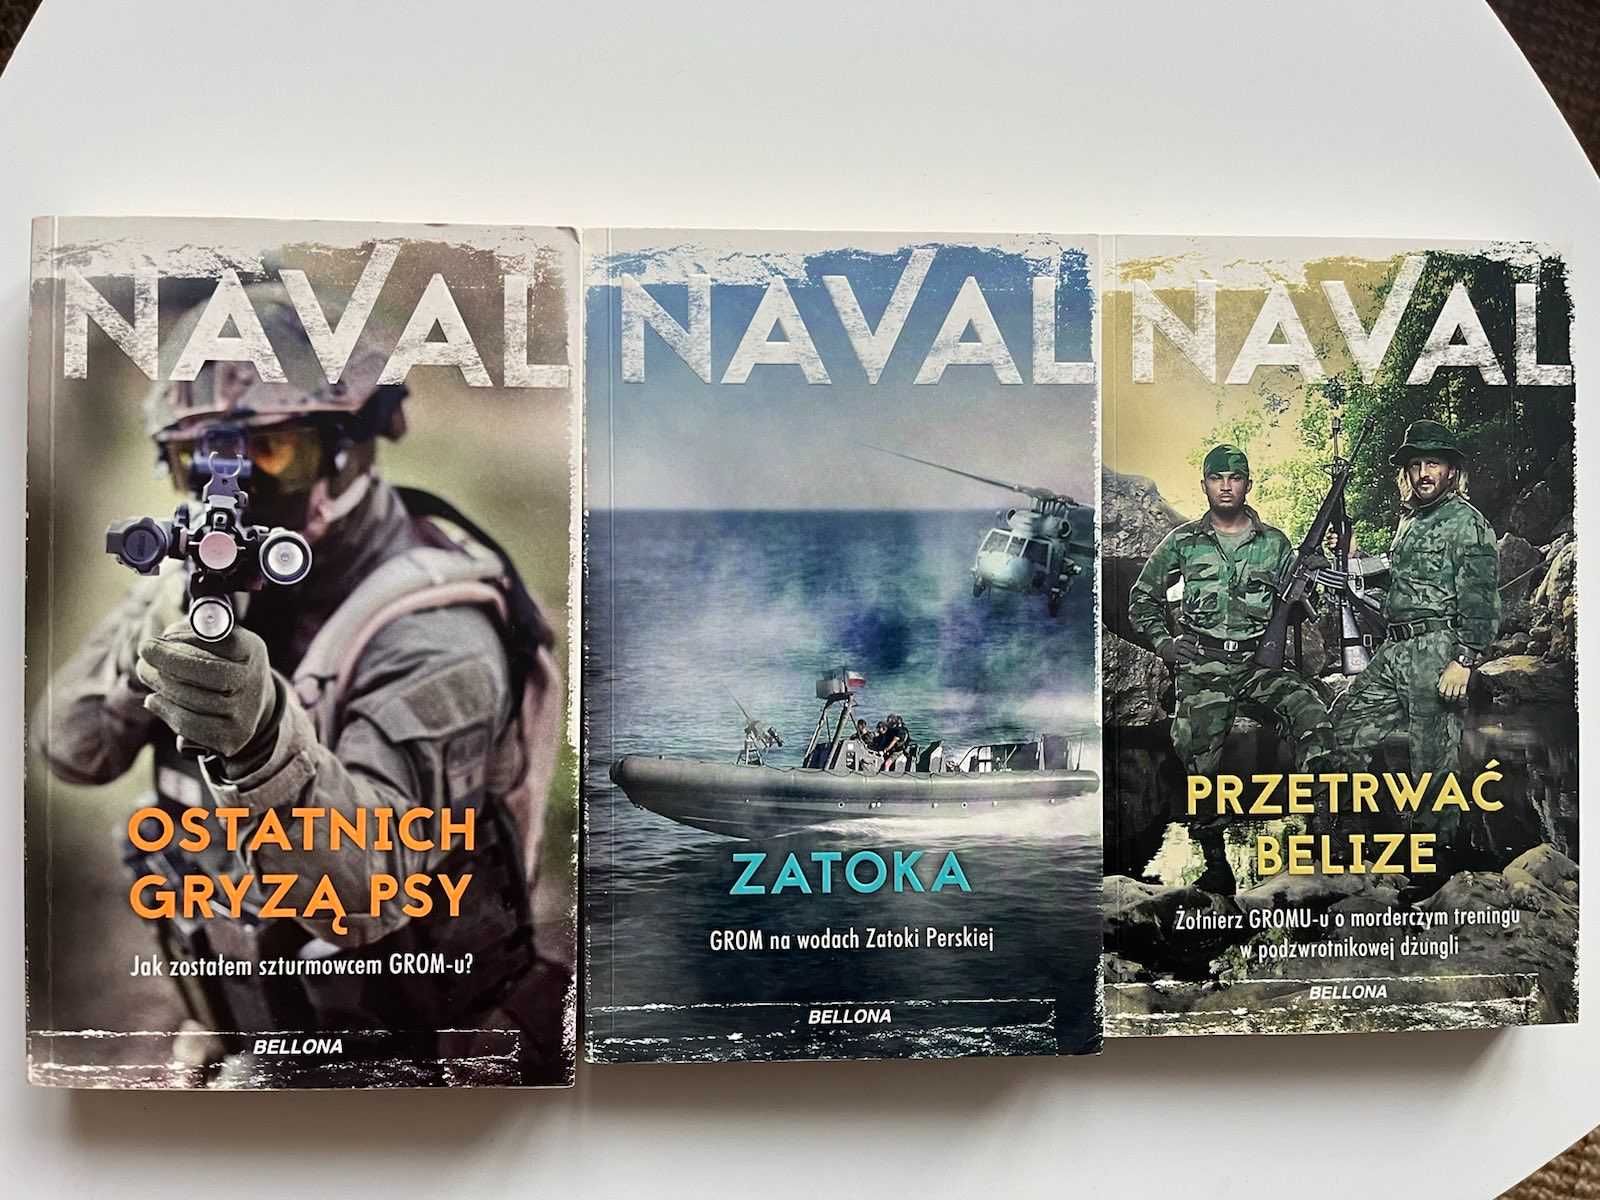 Książki Navala: "Ostatnich gryzą psy", "Zatoka", "Przetrwać Belize"